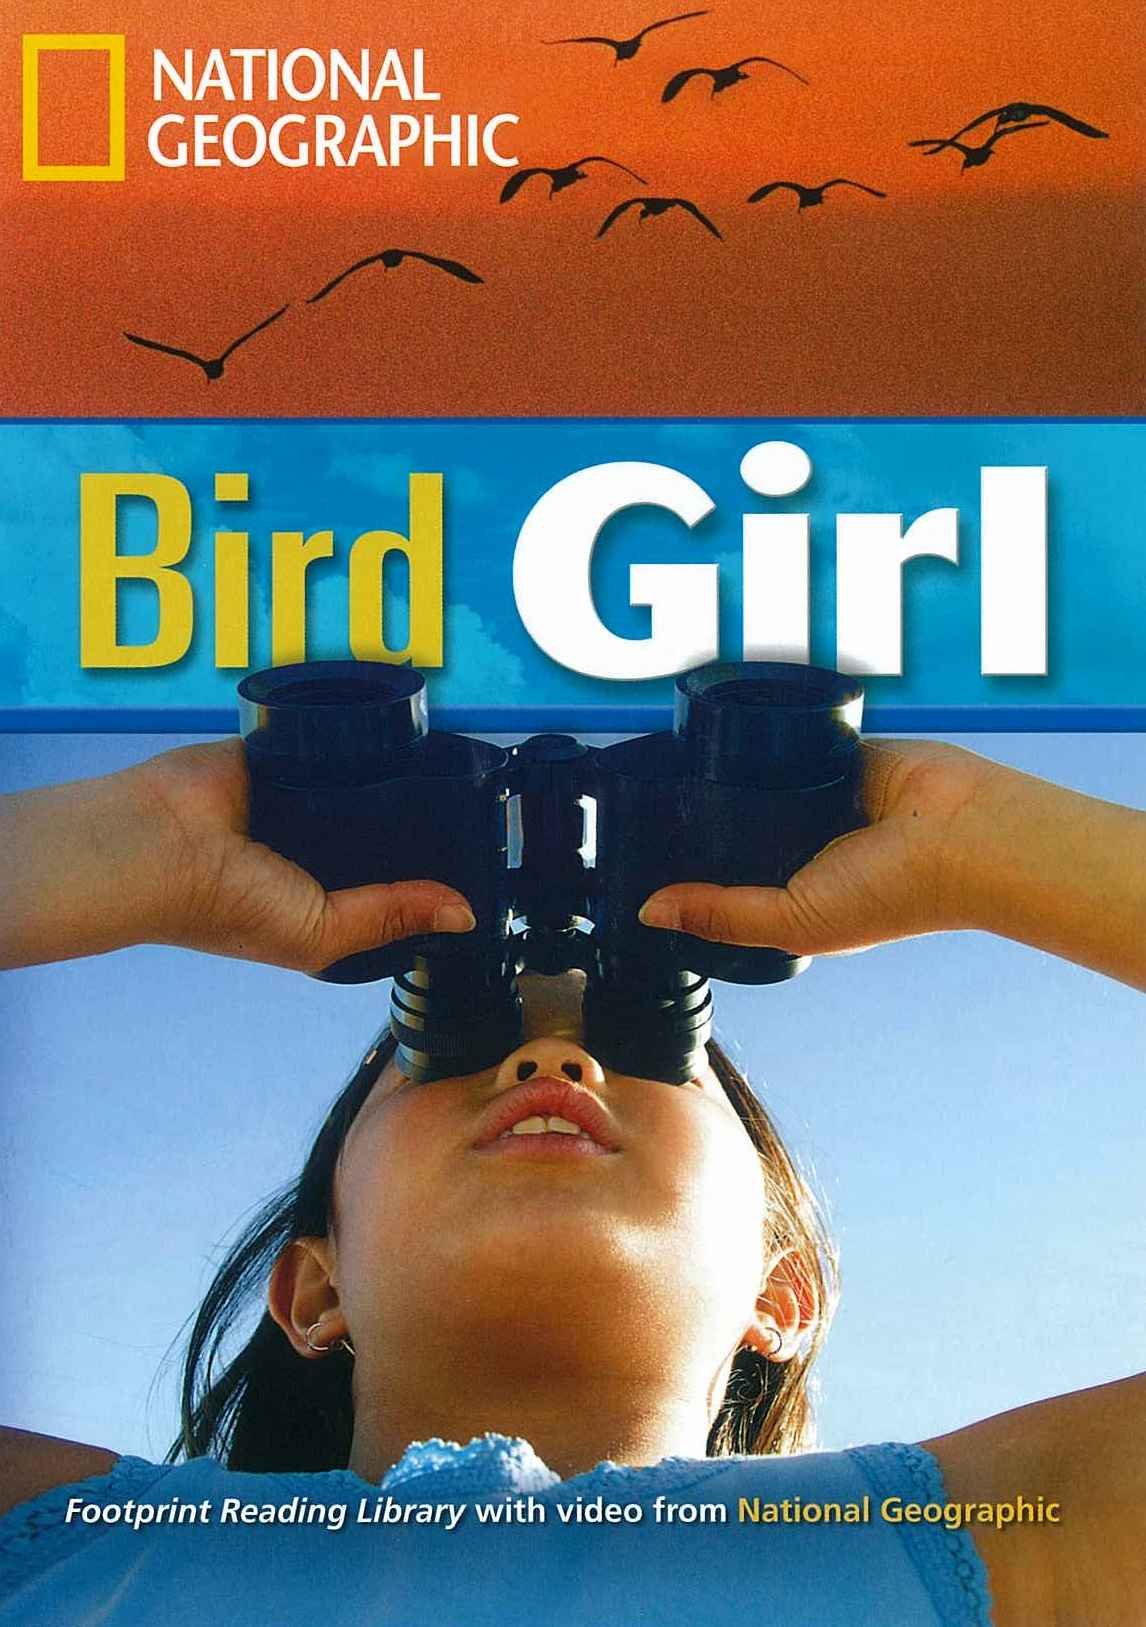 Waring R. Bird Girl 